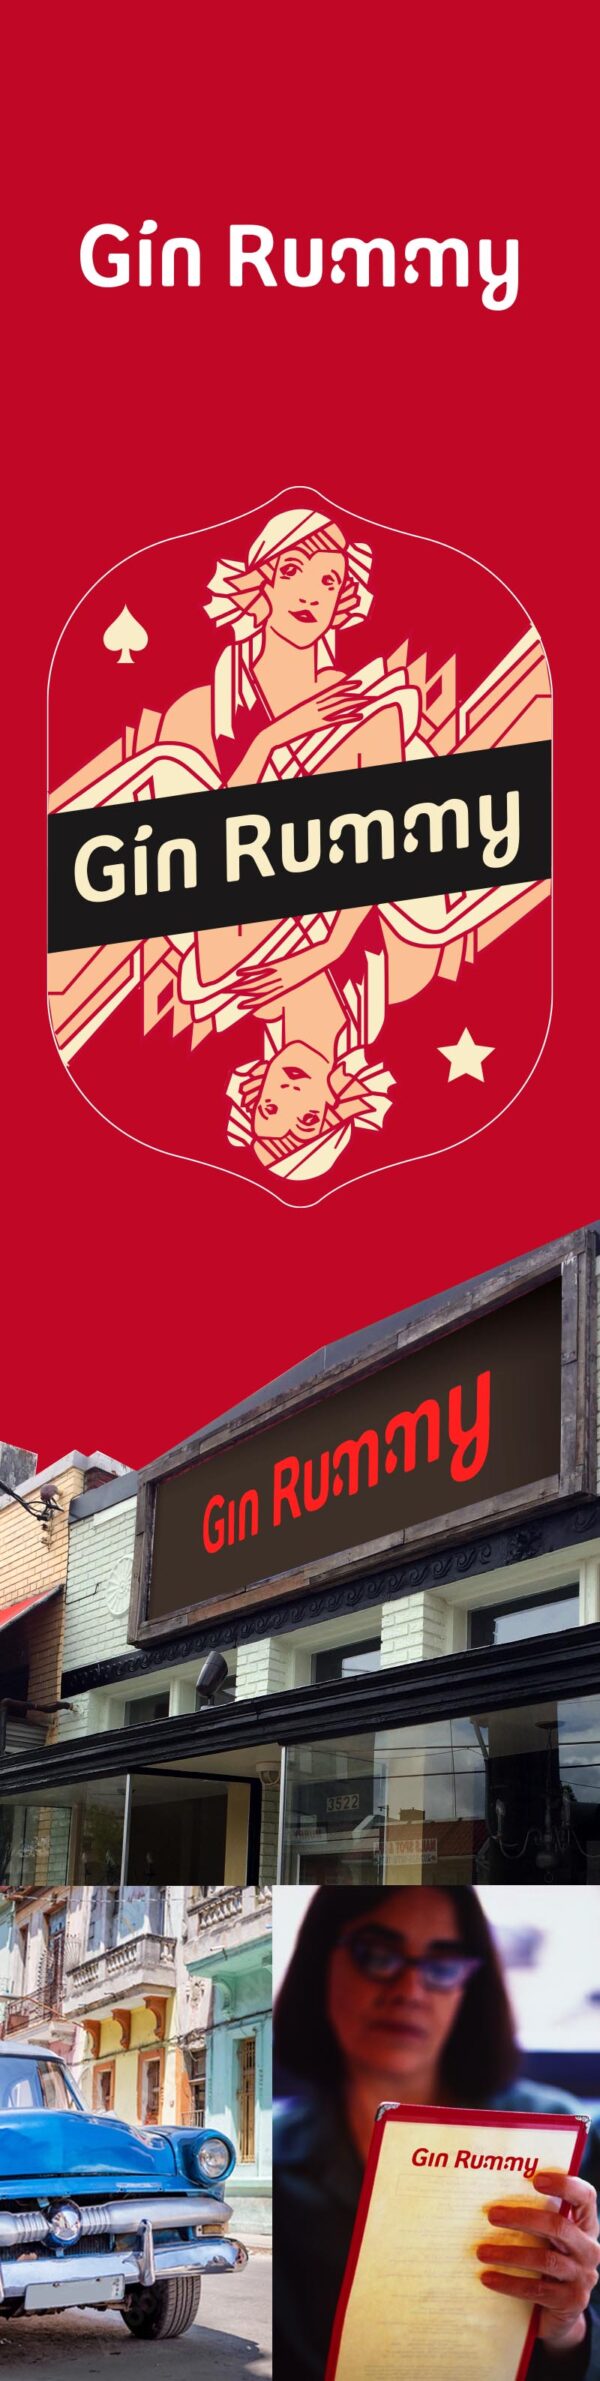 Logo design of Gin Rummy restaurant